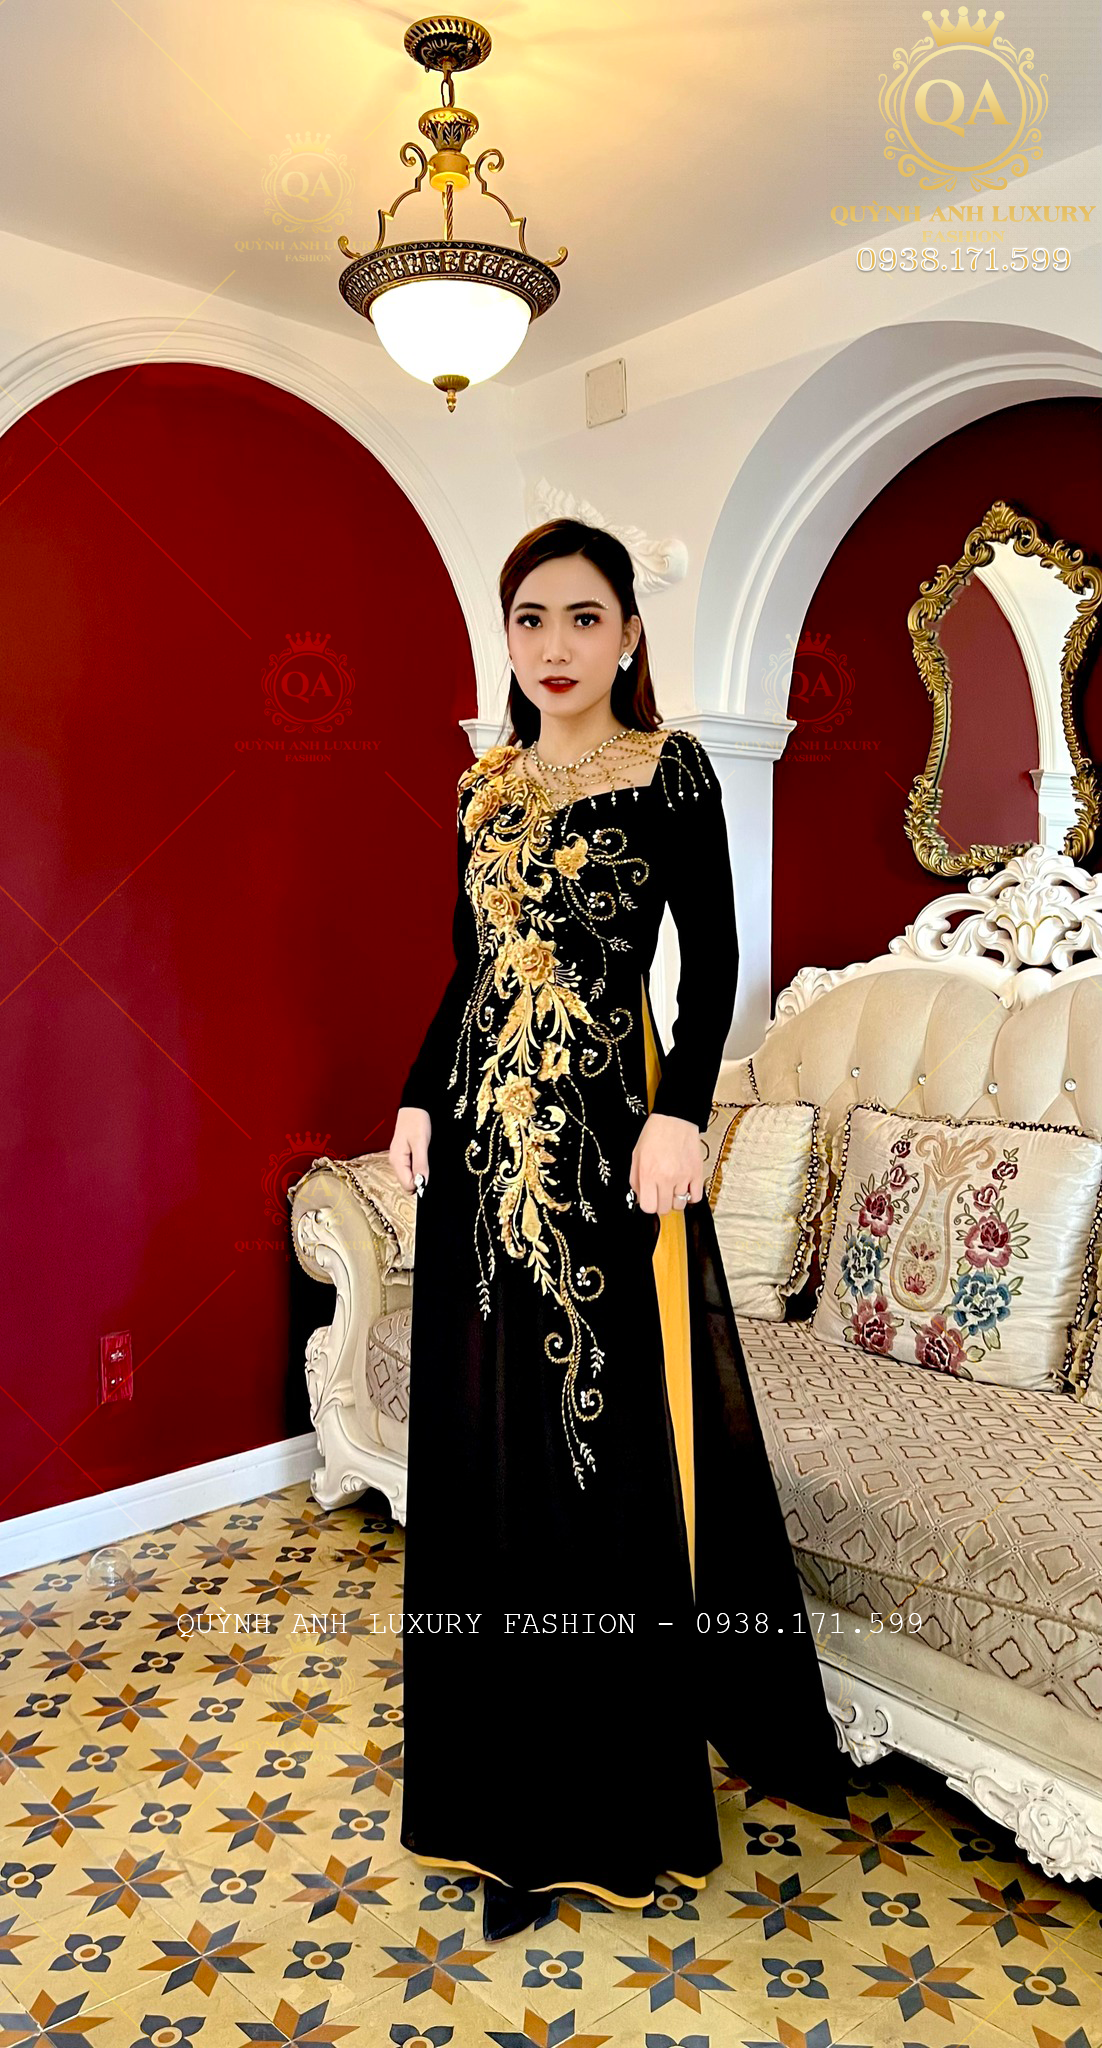 Quỳnh Anh Luxury Fashion - Đơn vị cung cấp đầm dạ hội cao cấp uy tín